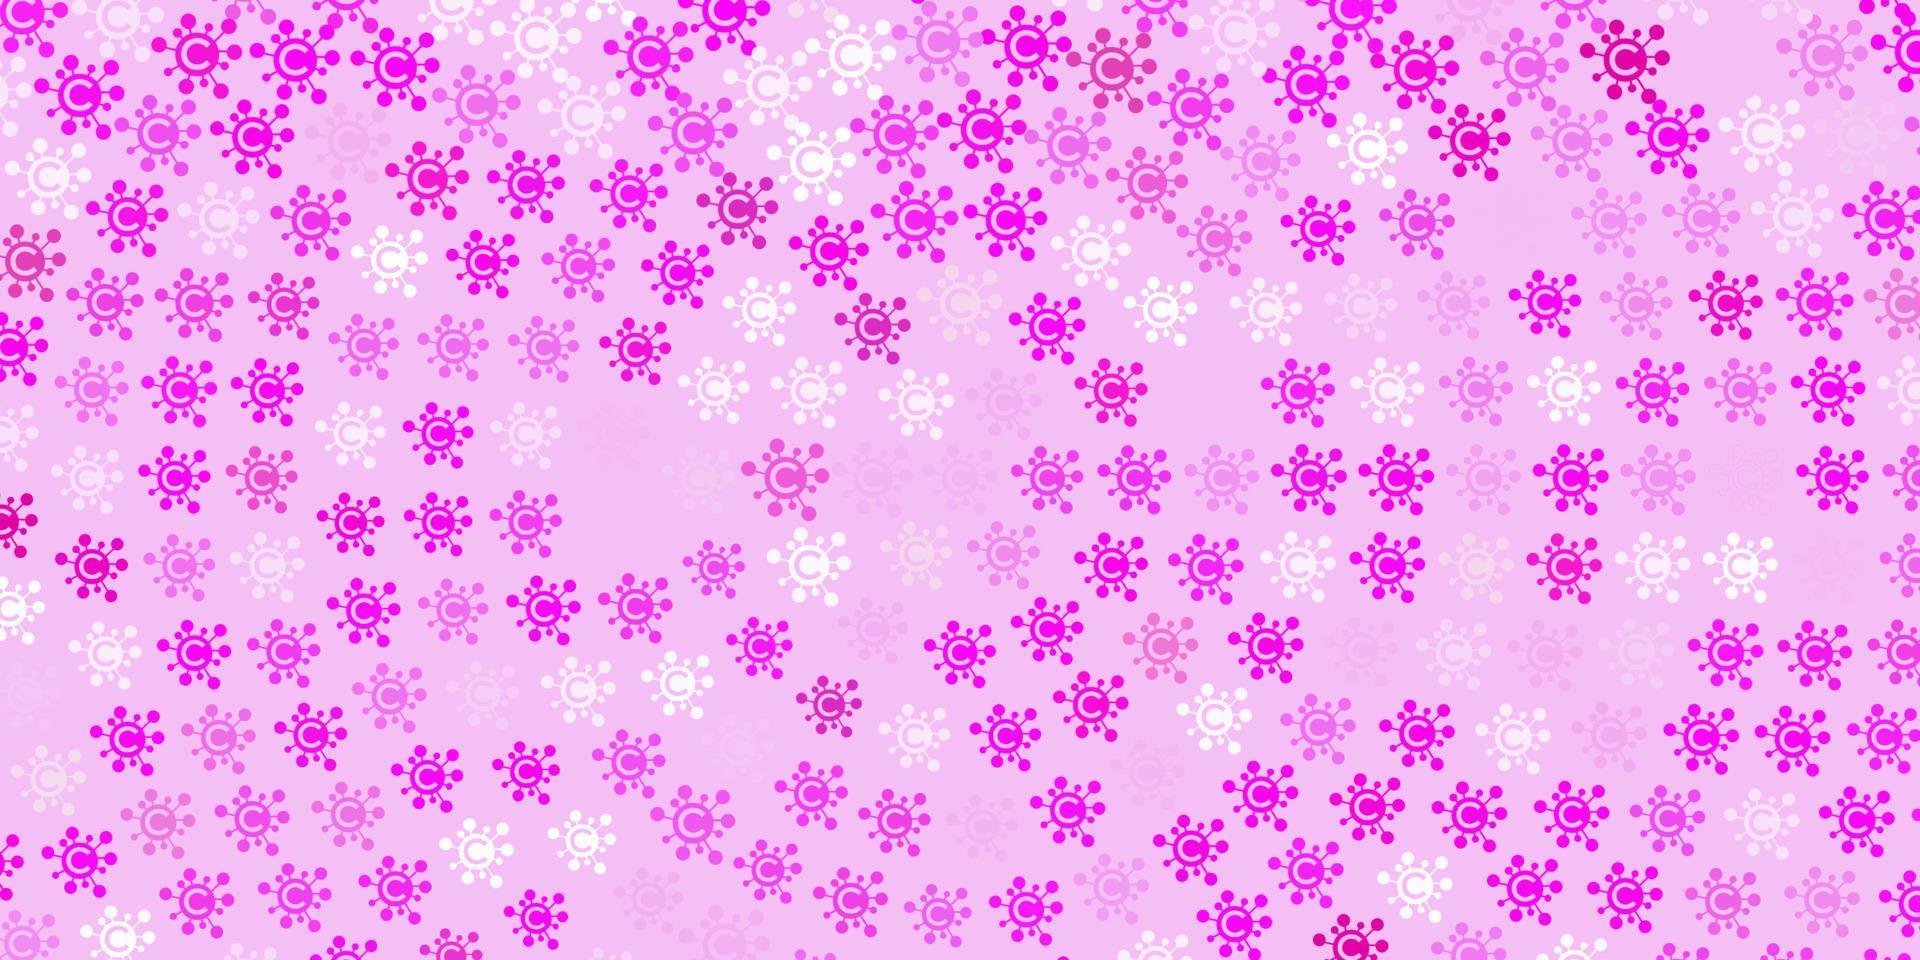 sfondo vettoriale rosa chiaro con simboli covid-19.